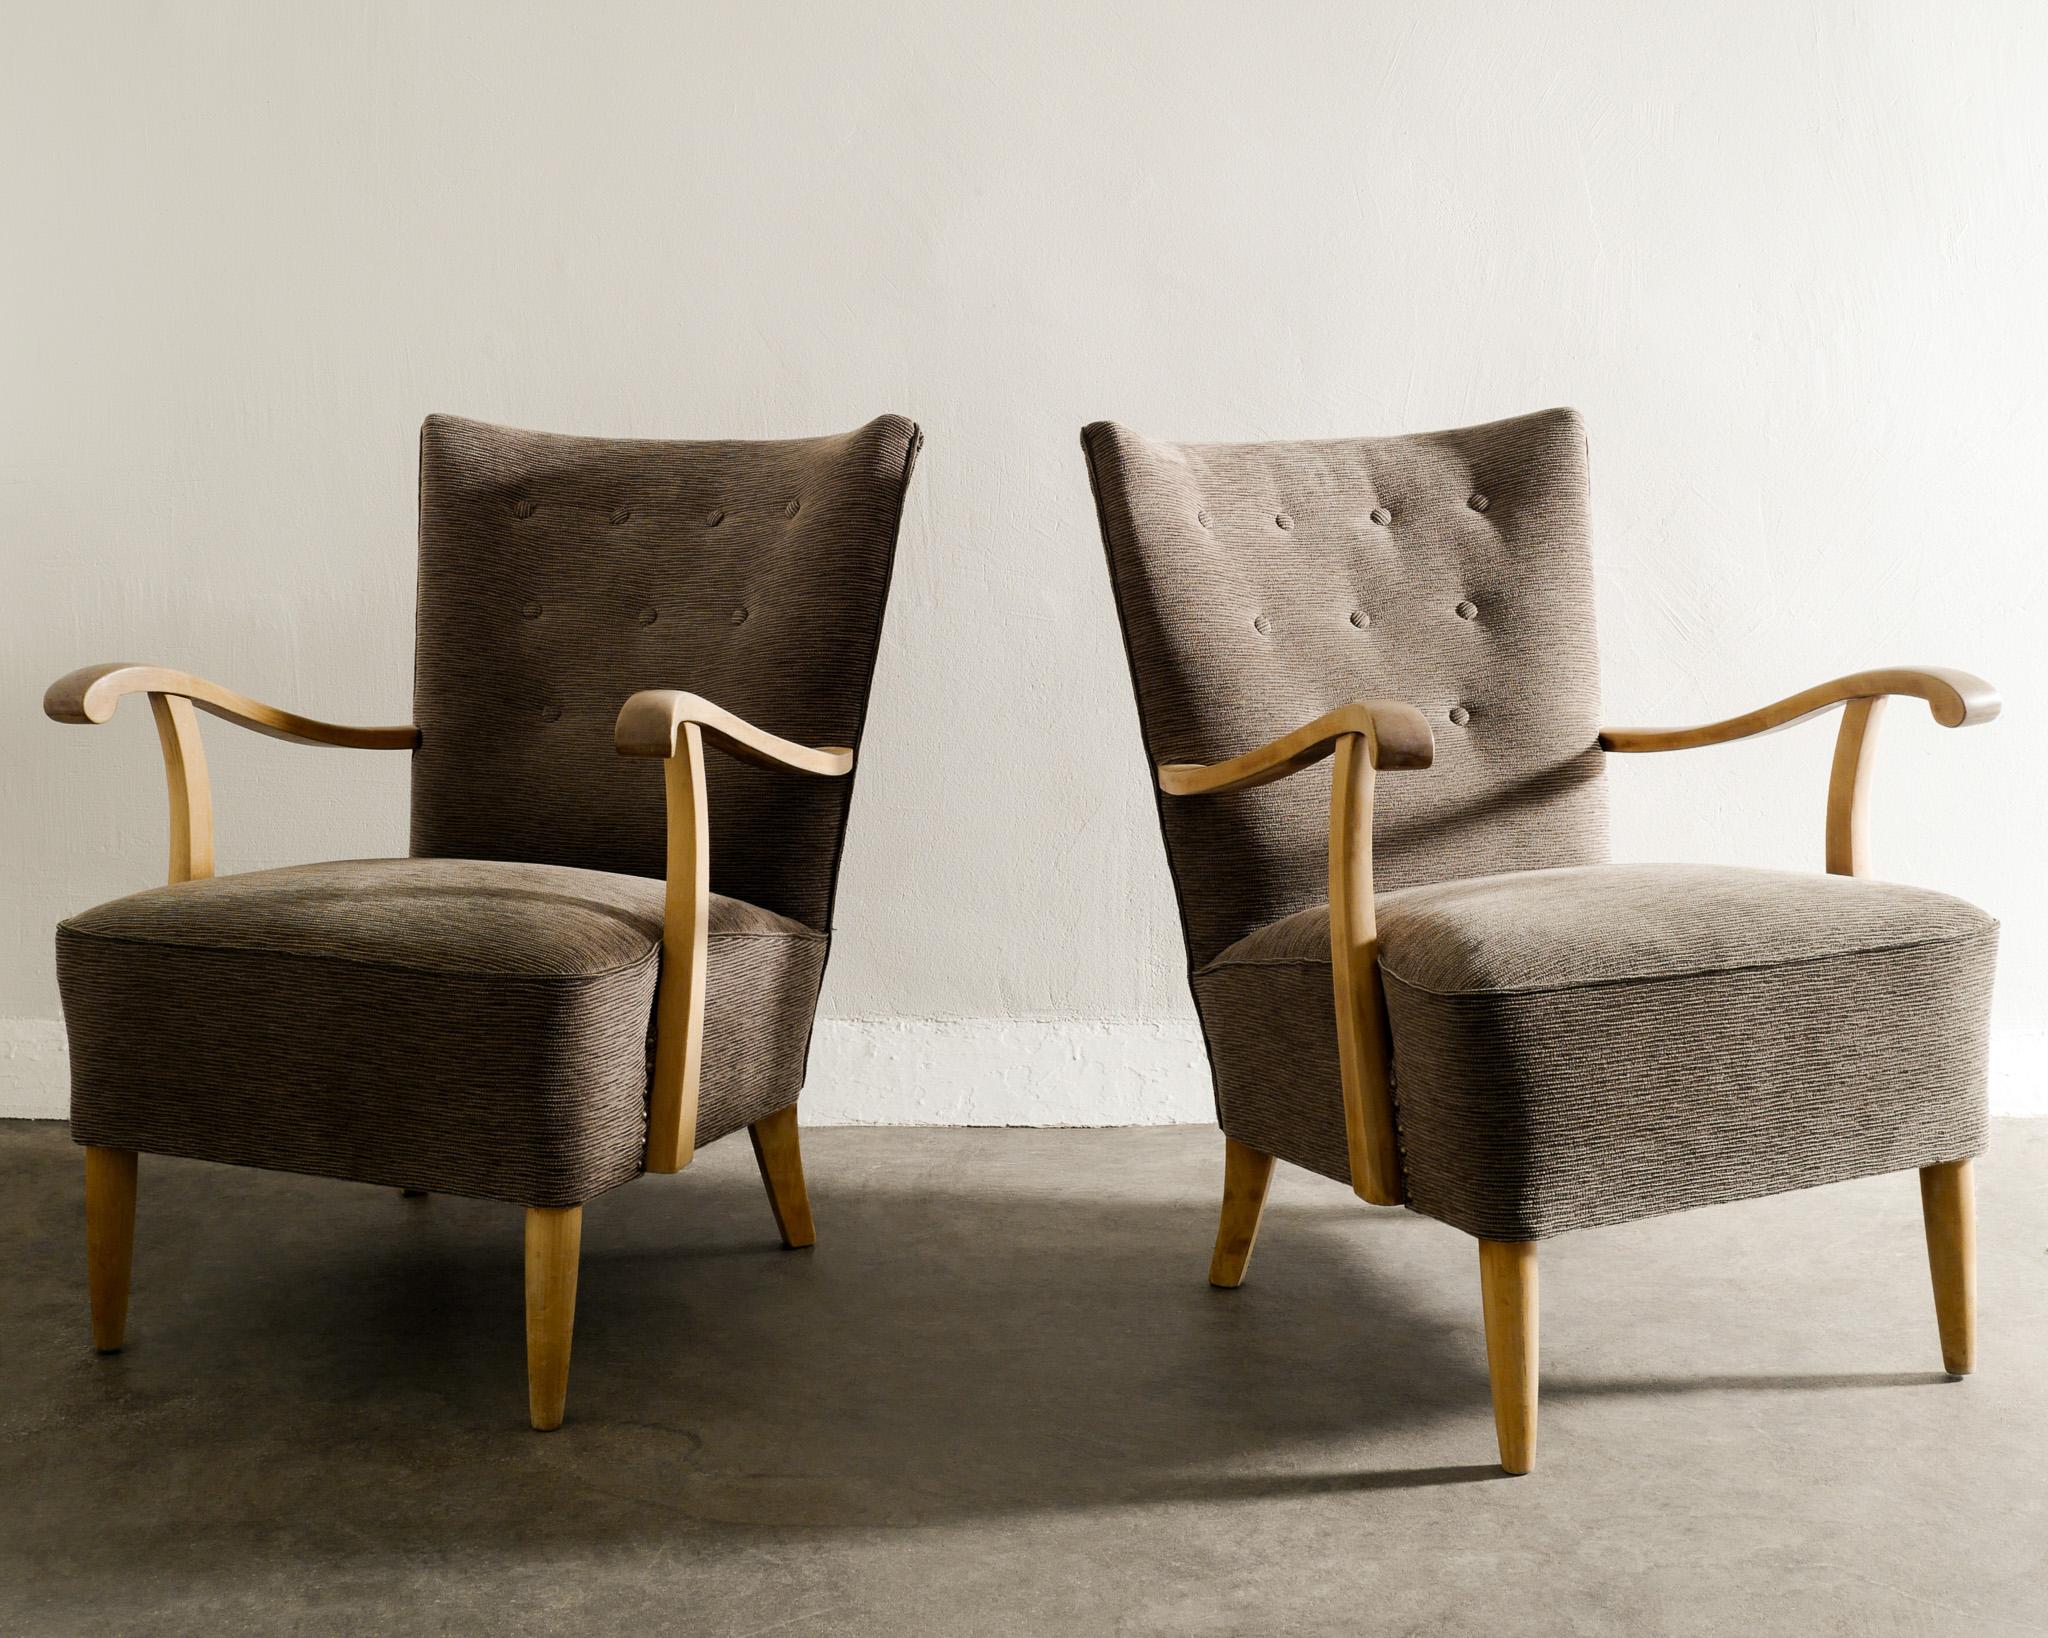 Seltenes Paar schwedische moderne Sessel aus der Mitte des Jahrhunderts in Buche und neu gepolstert braun / grau gestreiften Wollstoff. In gutem, passendem Zustand. 

Abmessungen: H: 85 cm / 33.5